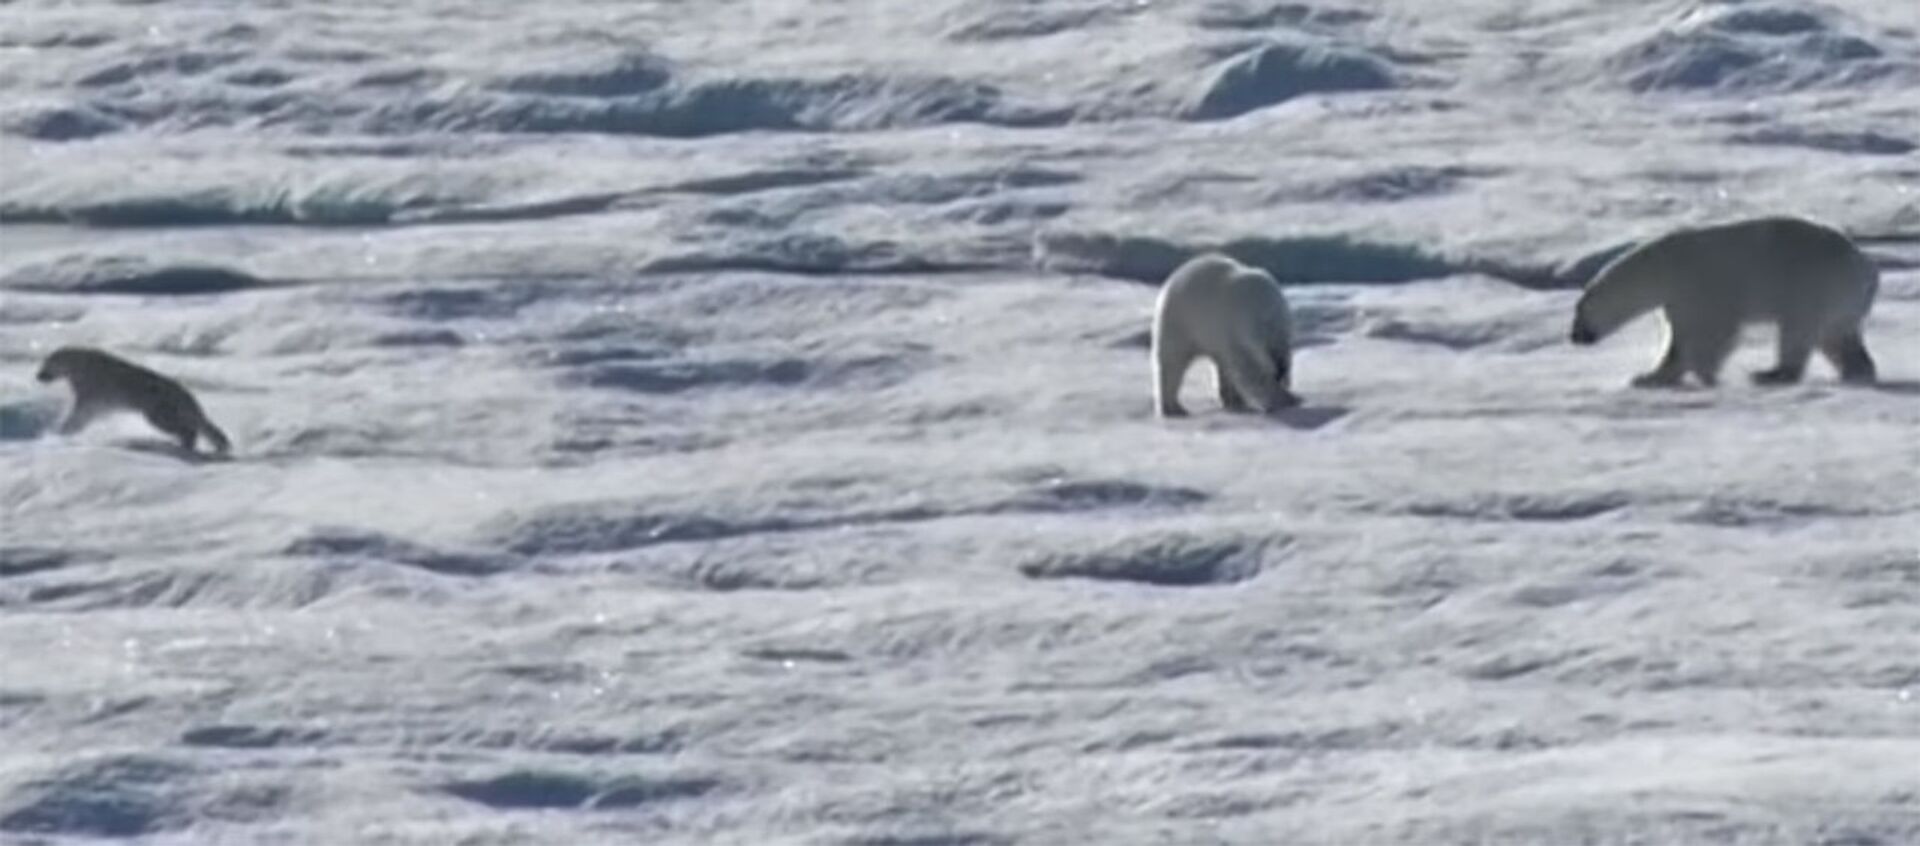 Ужасы глобального потепления — белый медведь догнал и съел медвежонка. Видео - Sputnik Кыргызстан, 1920, 15.05.2020